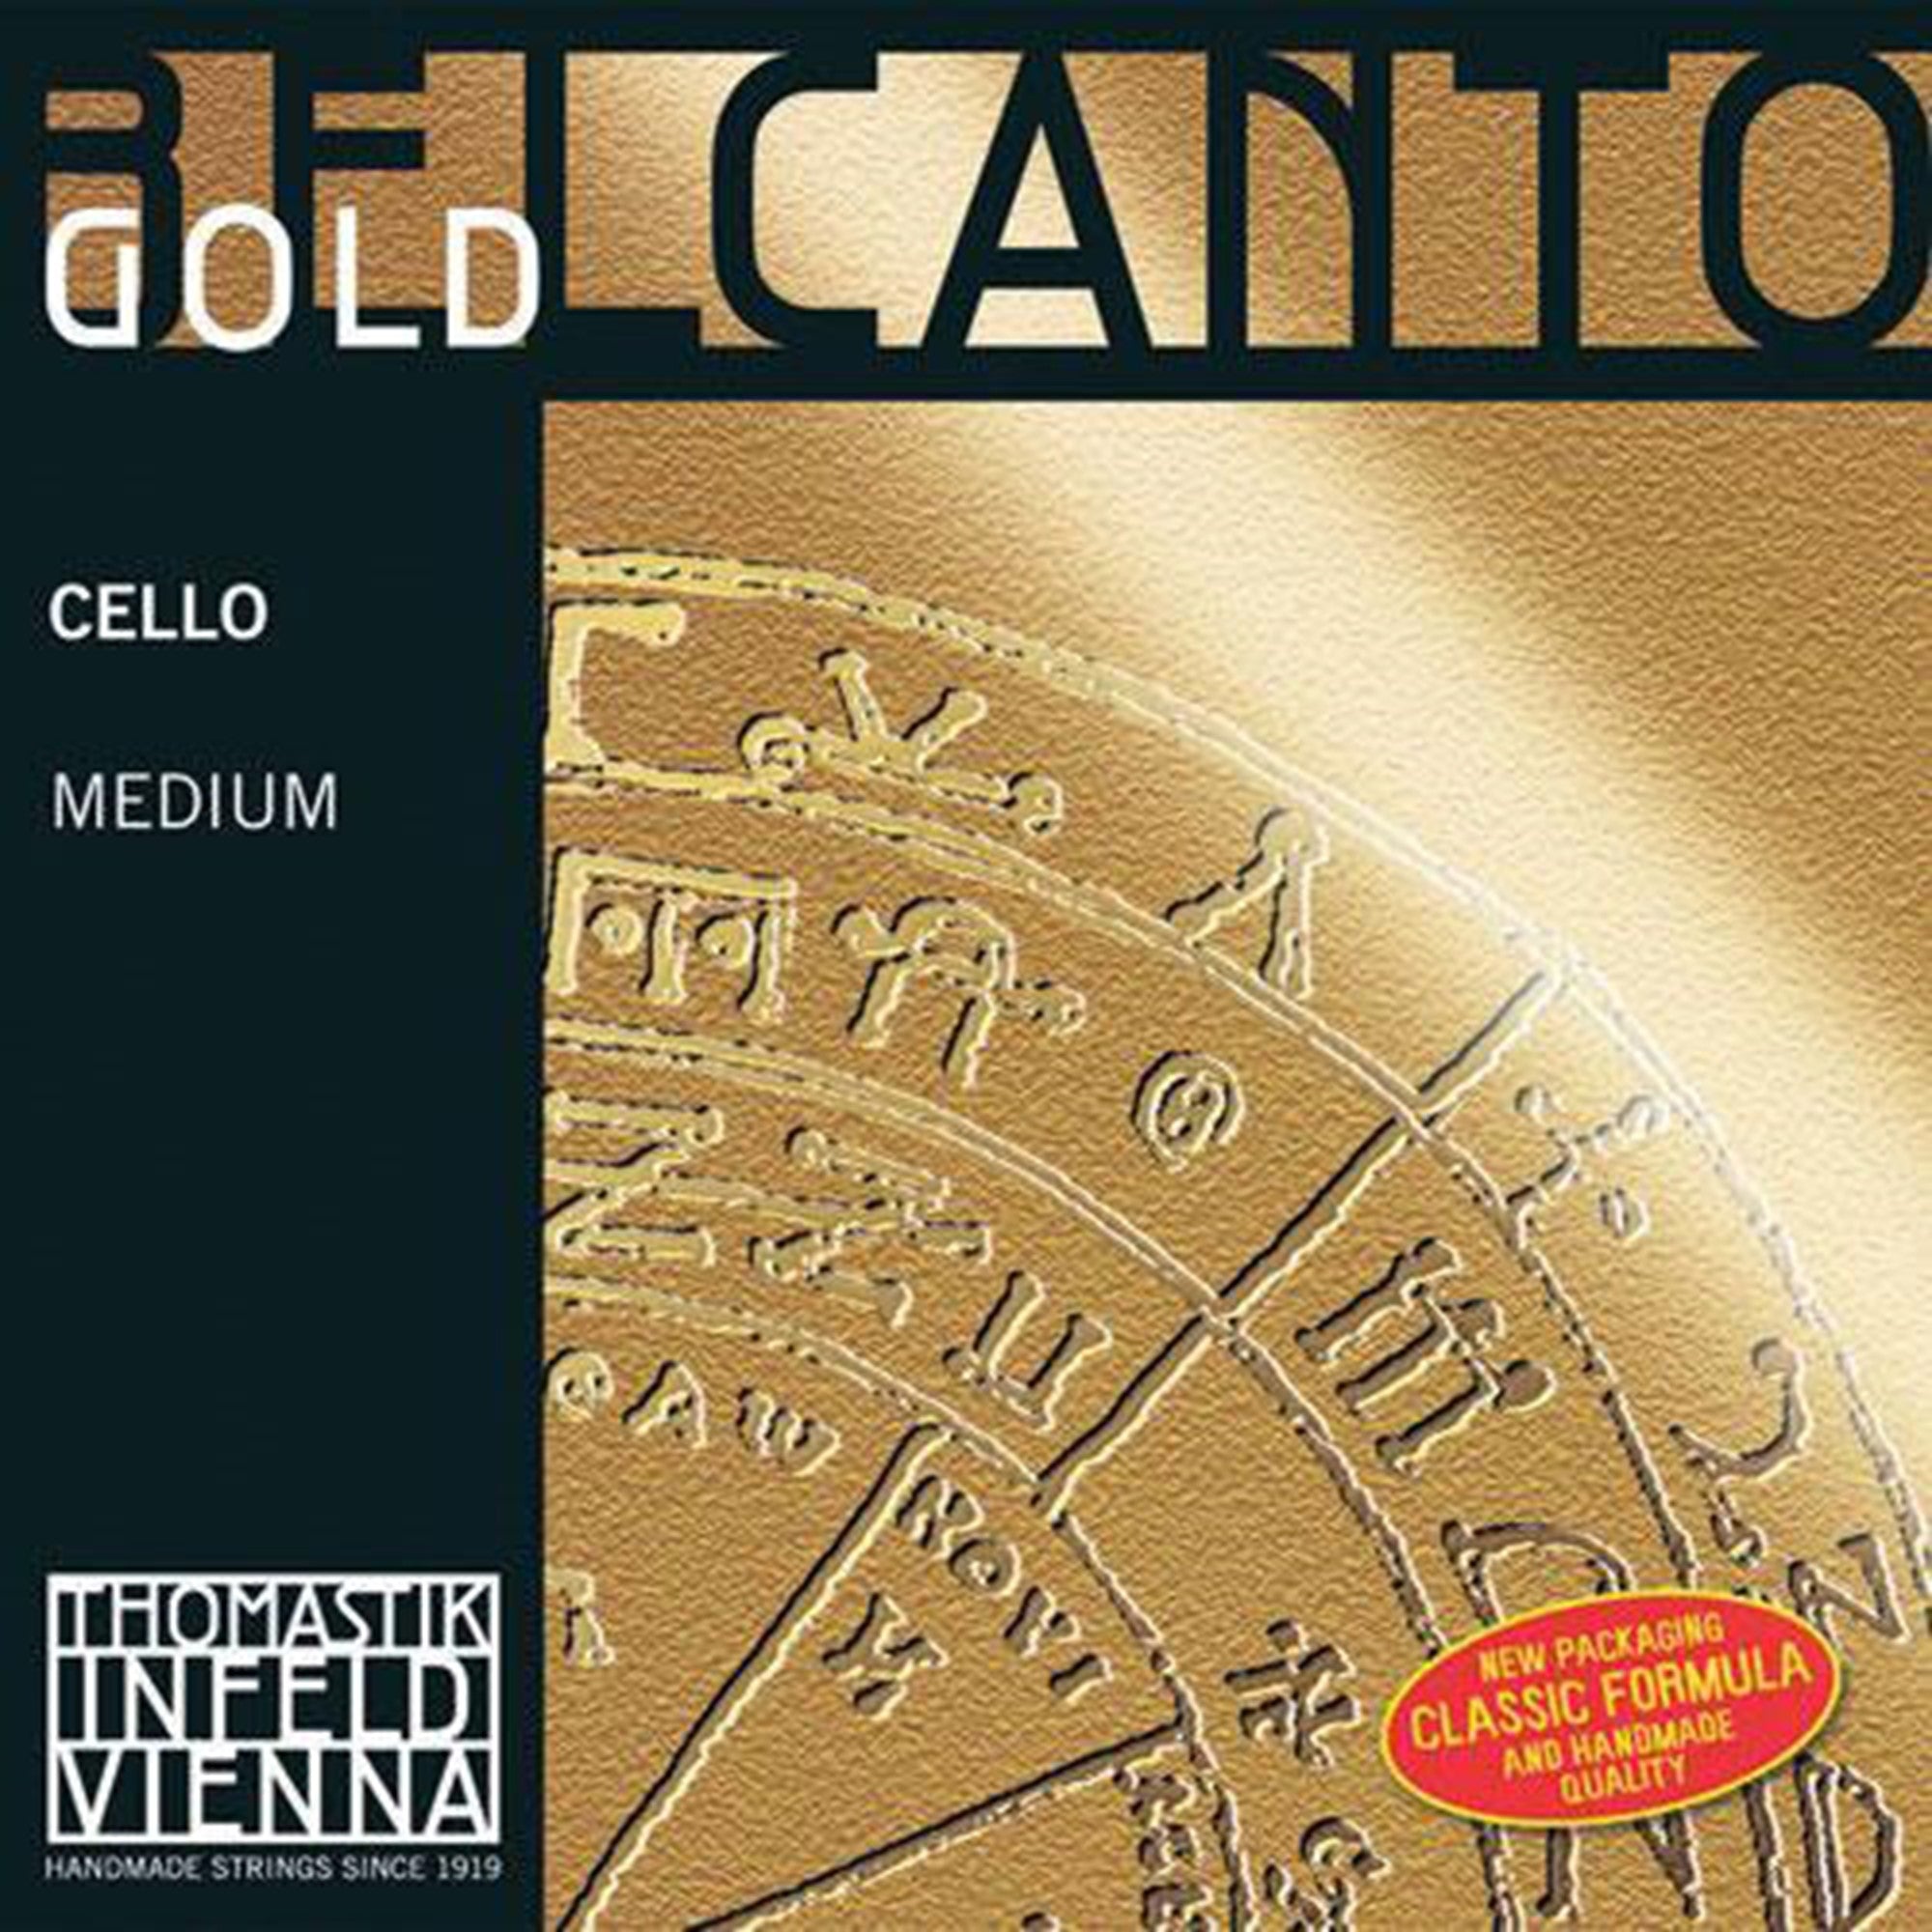 Thomastik Belcanto Gold Cello A String